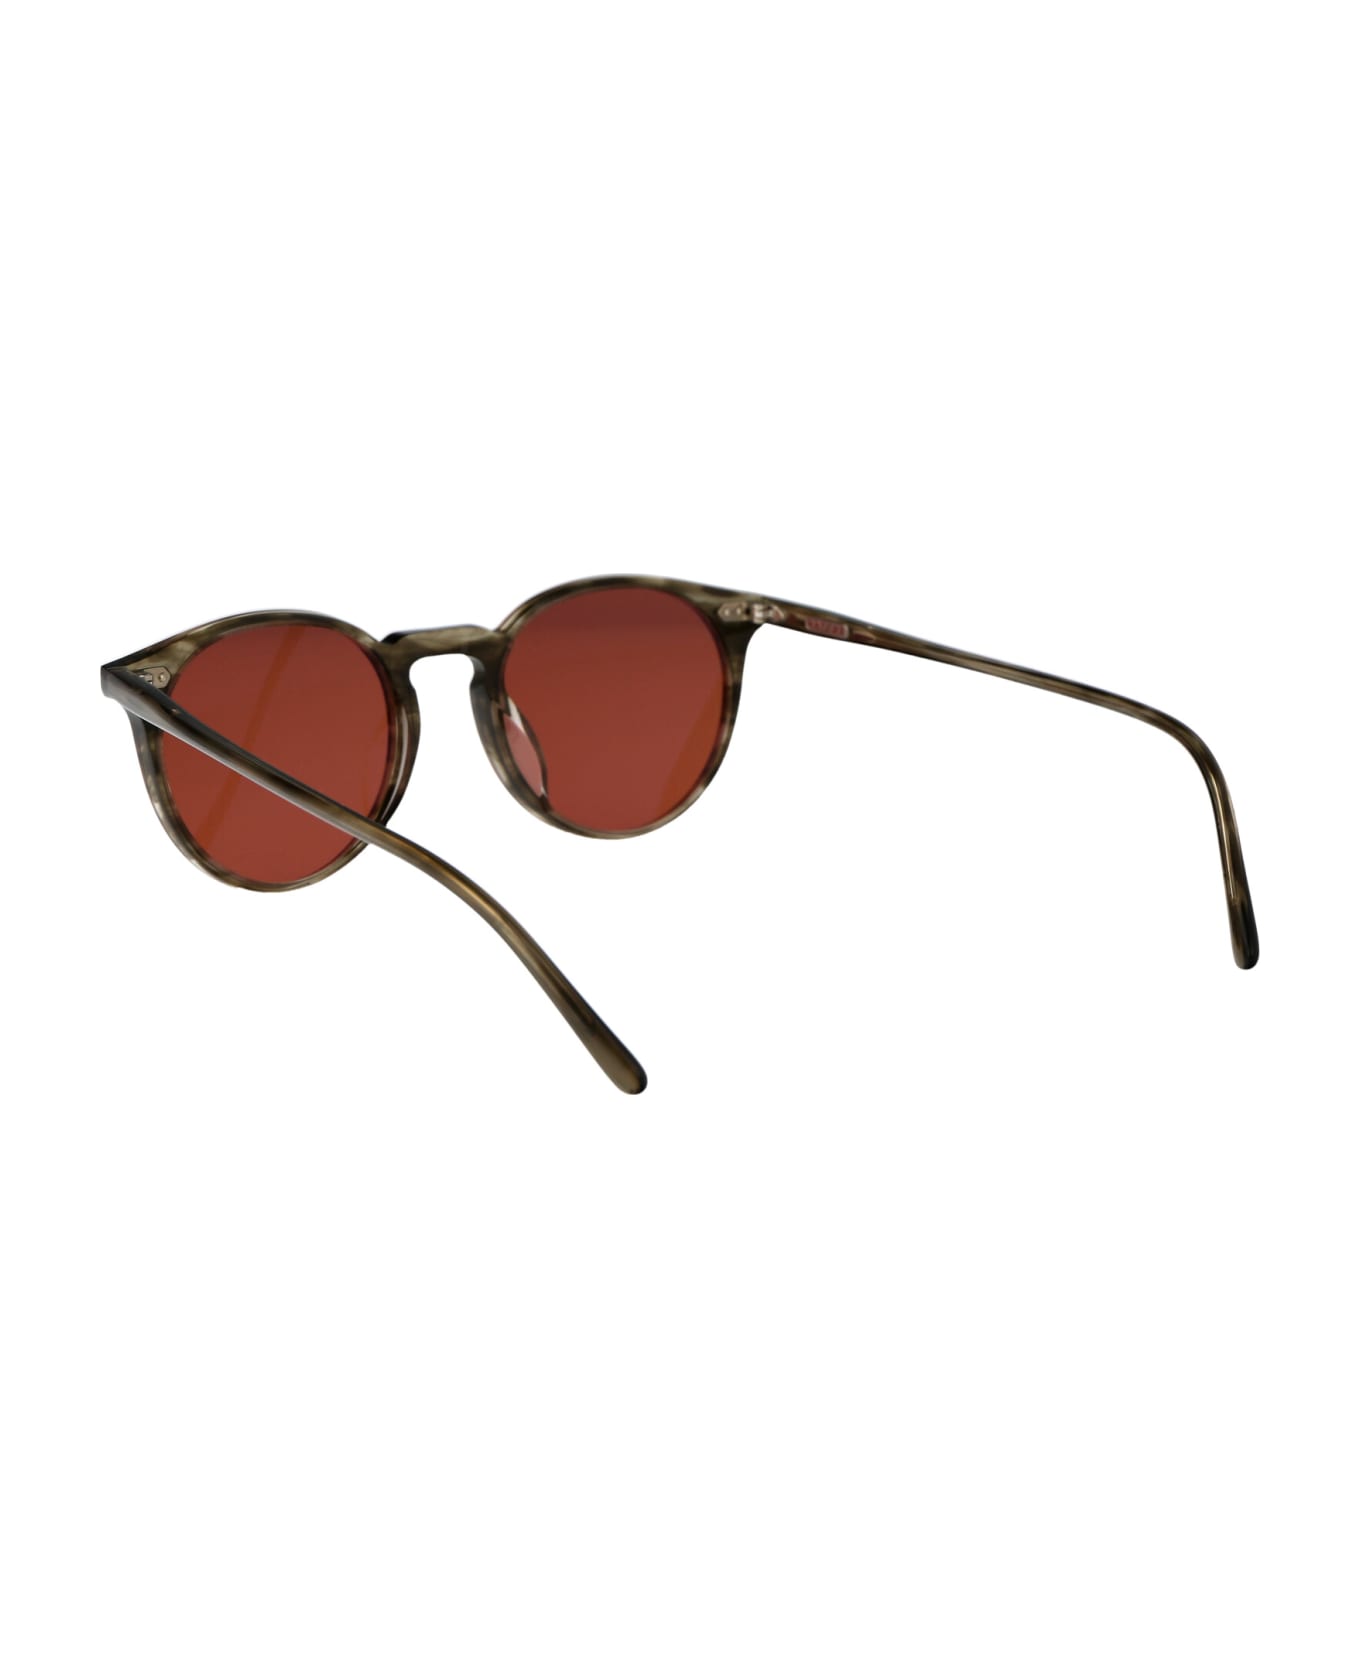 Oliver Peoples N.02 Sun Sunglasses - 173553 Soft Olive Bark